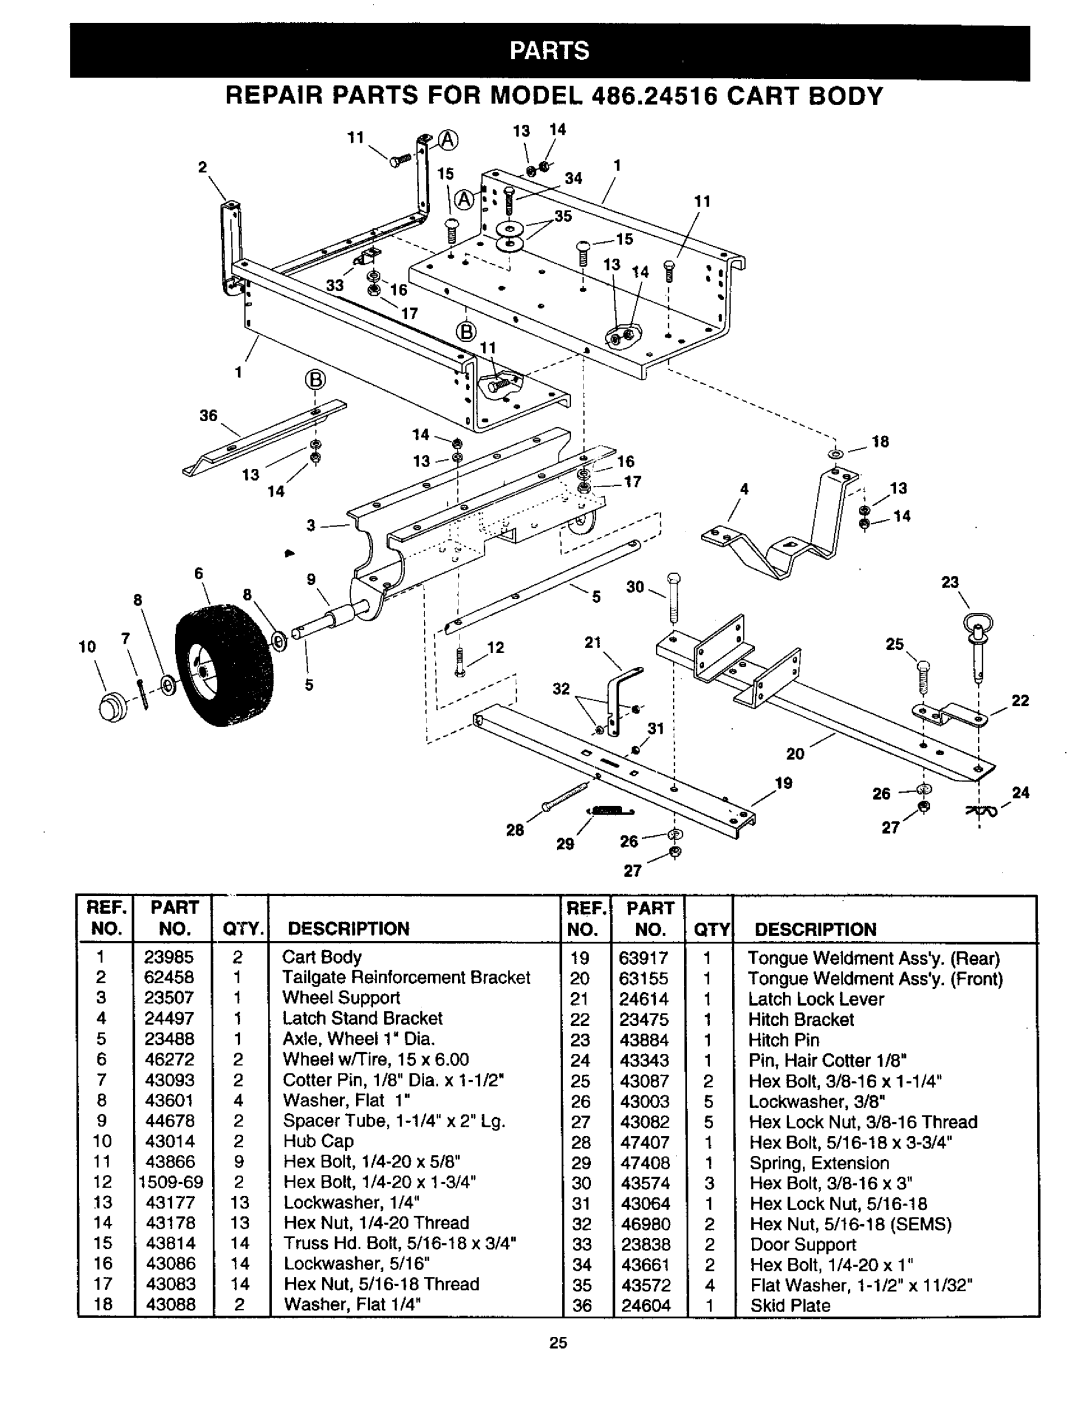 Craftsman manual REPAIR PARTS FOR MODEL 486.24516 CART BODY 